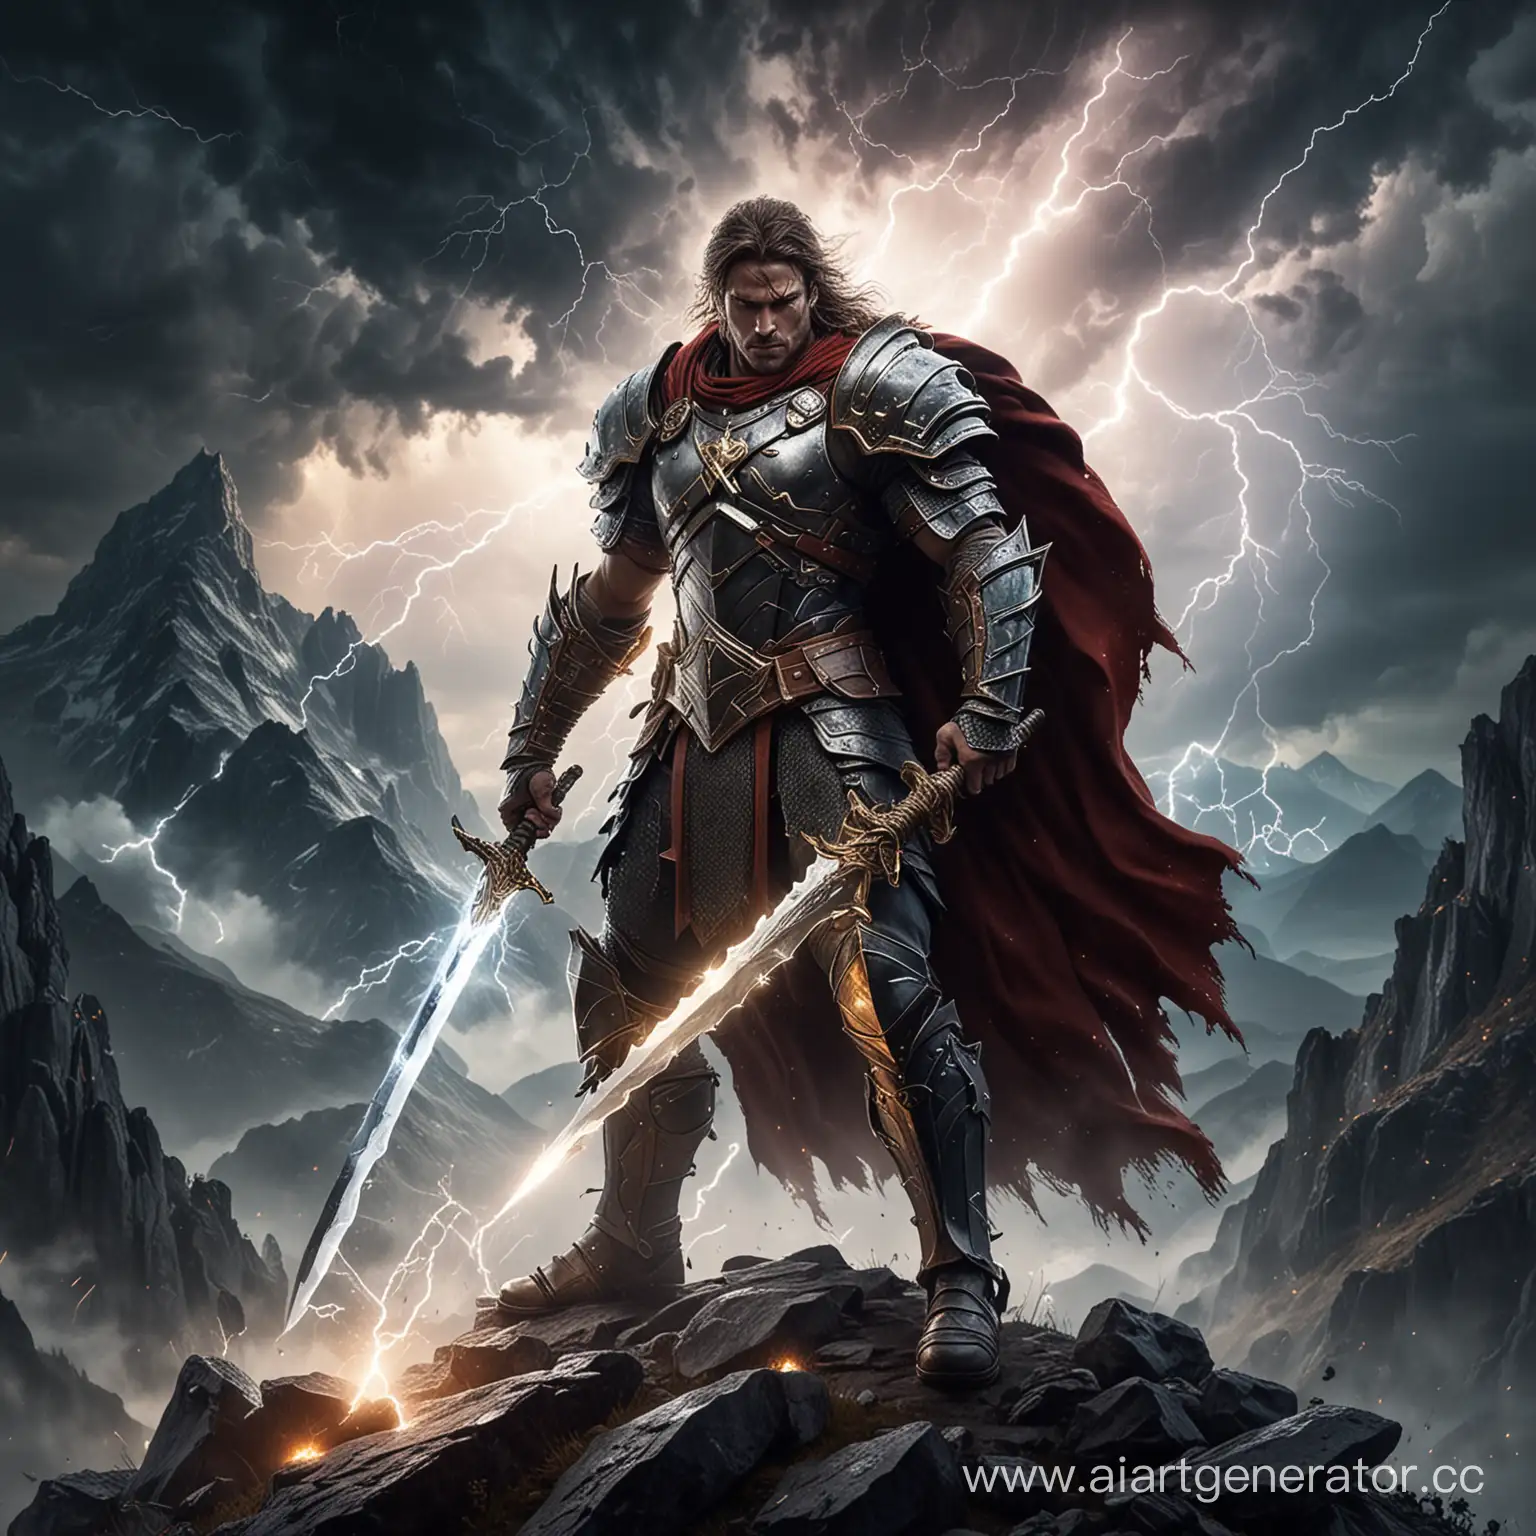 Воин в броне обьятый силой молнии с огромным мечем на вершине горы на фоне молний 